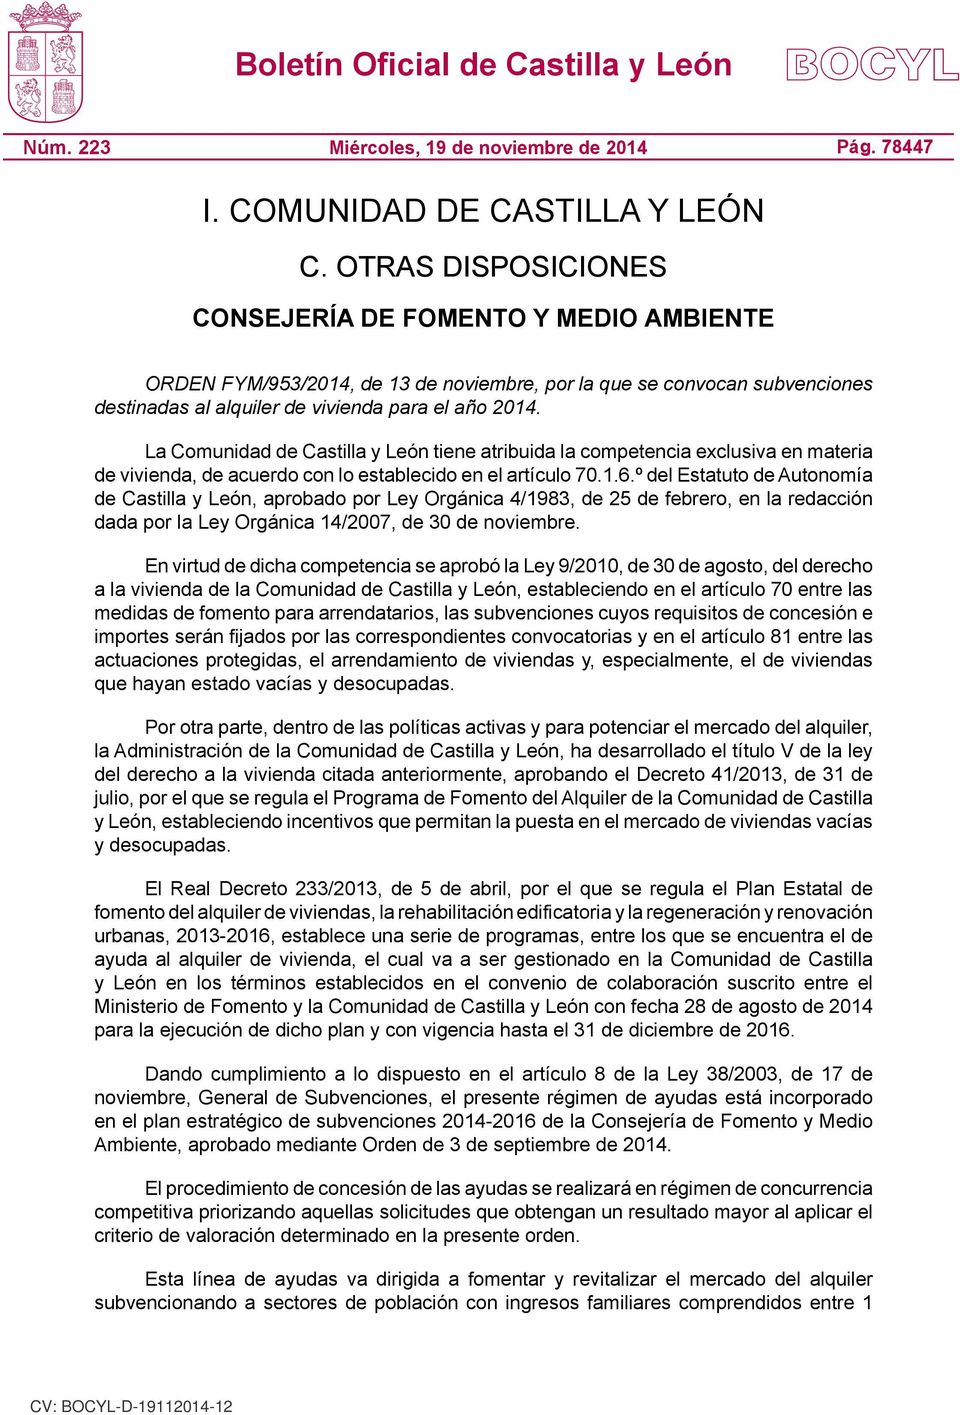 La Comunidad de Castilla y León tiene atribuida la competencia exclusiva en materia de vivienda, de acuerdo con lo establecido en el artículo 70.1.6.